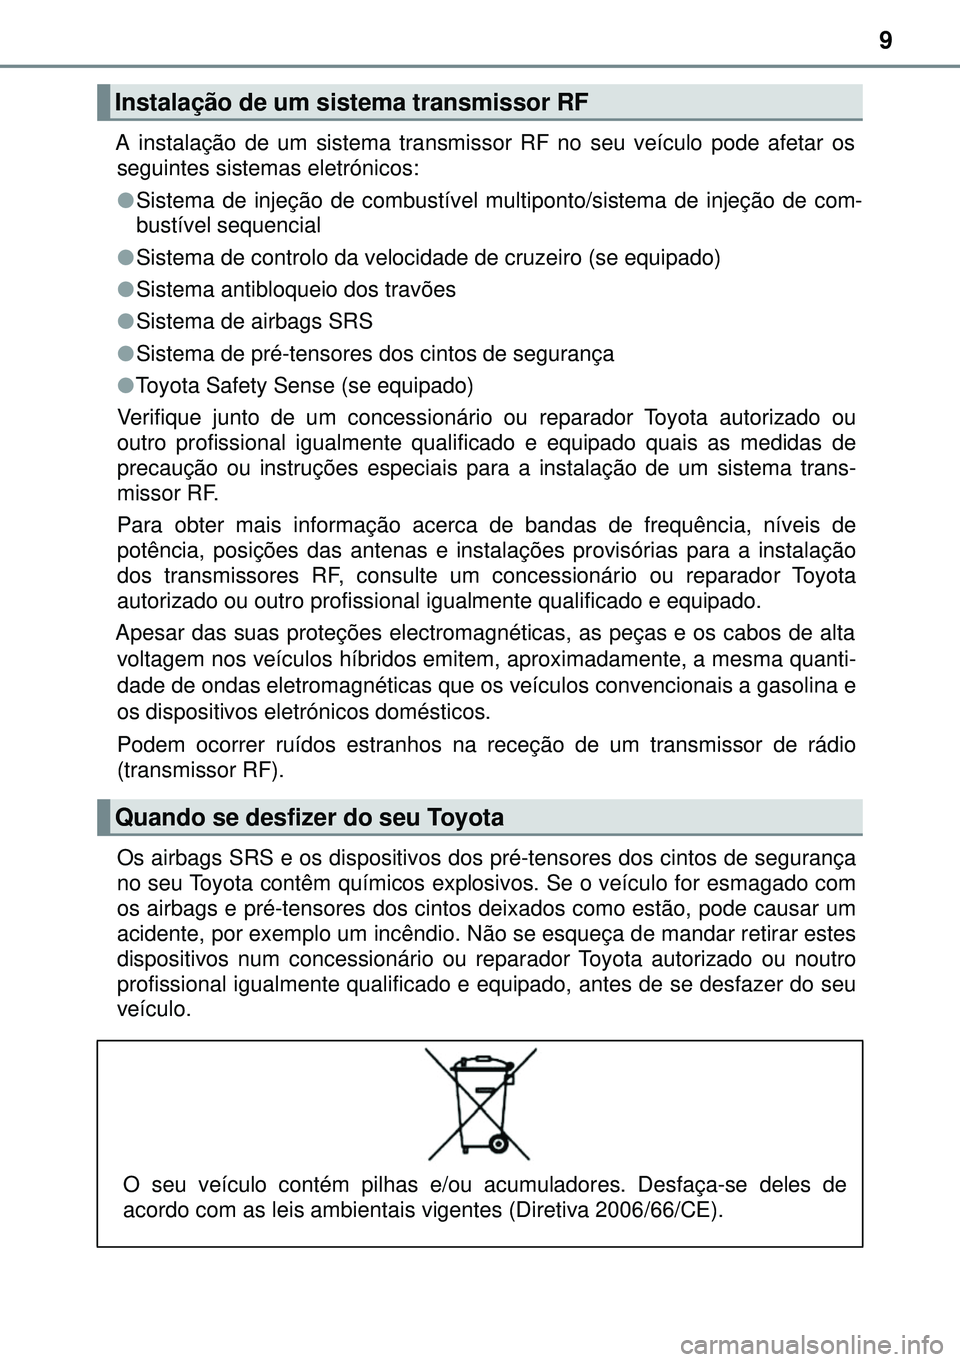 TOYOTA AURIS HYBRID 2015  Manual de utilização (in Portuguese) 9
A instalação de um sistema transmissor RF no seu veículo pode afetar os
seguintes sistemas eletrónicos:
lSistema de injeção de combustível multiponto/sistema de injeção de com-
bustível se